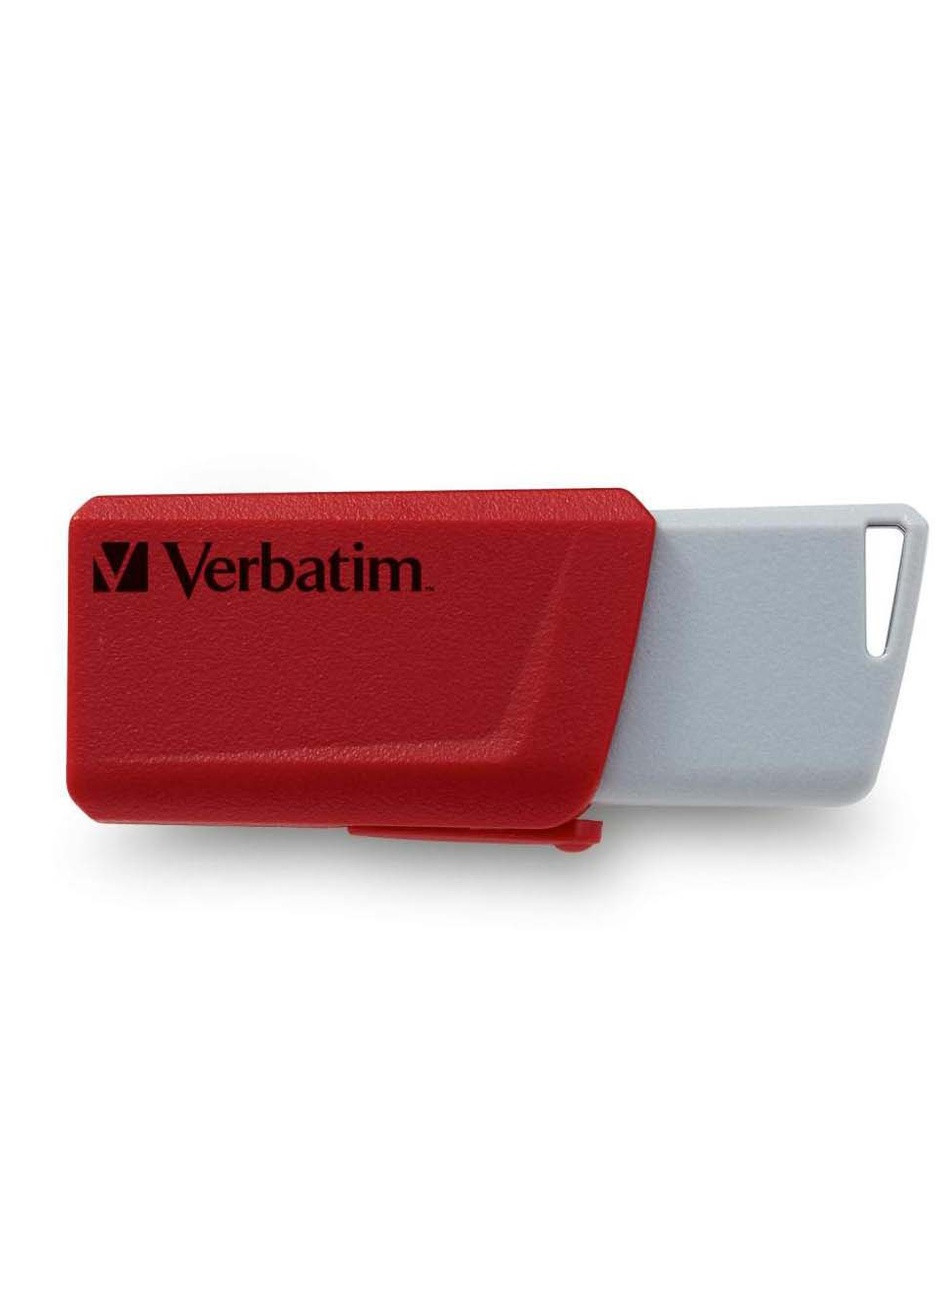 USB флеш накопитель (49308) Verbatim 2x32gb store 'n' click red/blue usb 3.2 (232750079)